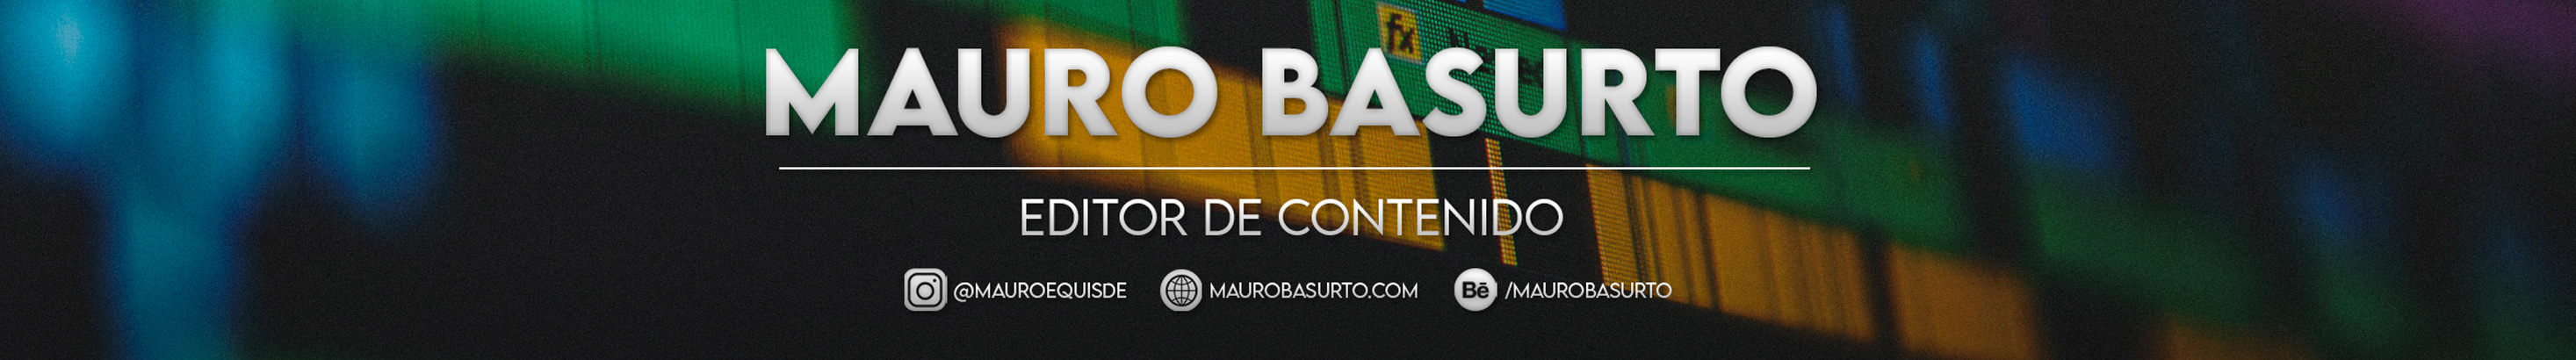 Mauro Basurto's profile banner